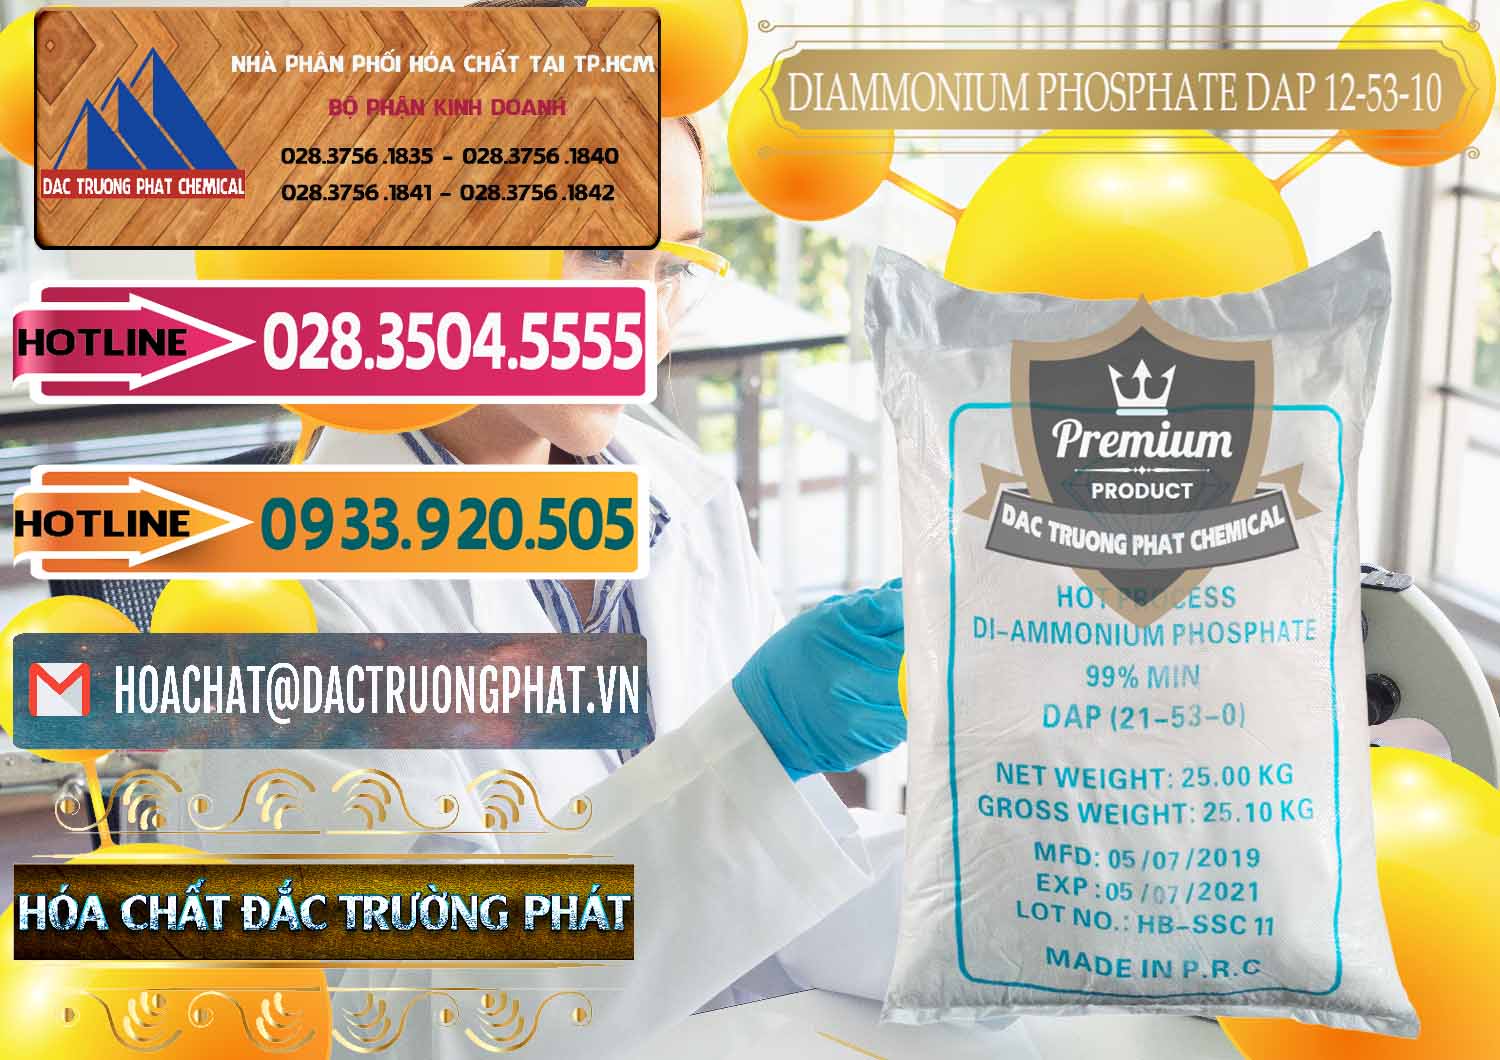 Cty chuyên bán và cung ứng DAP - Diammonium Phosphate Trung Quốc China - 0319 - Đơn vị kinh doanh ( phân phối ) hóa chất tại TP.HCM - dactruongphat.vn